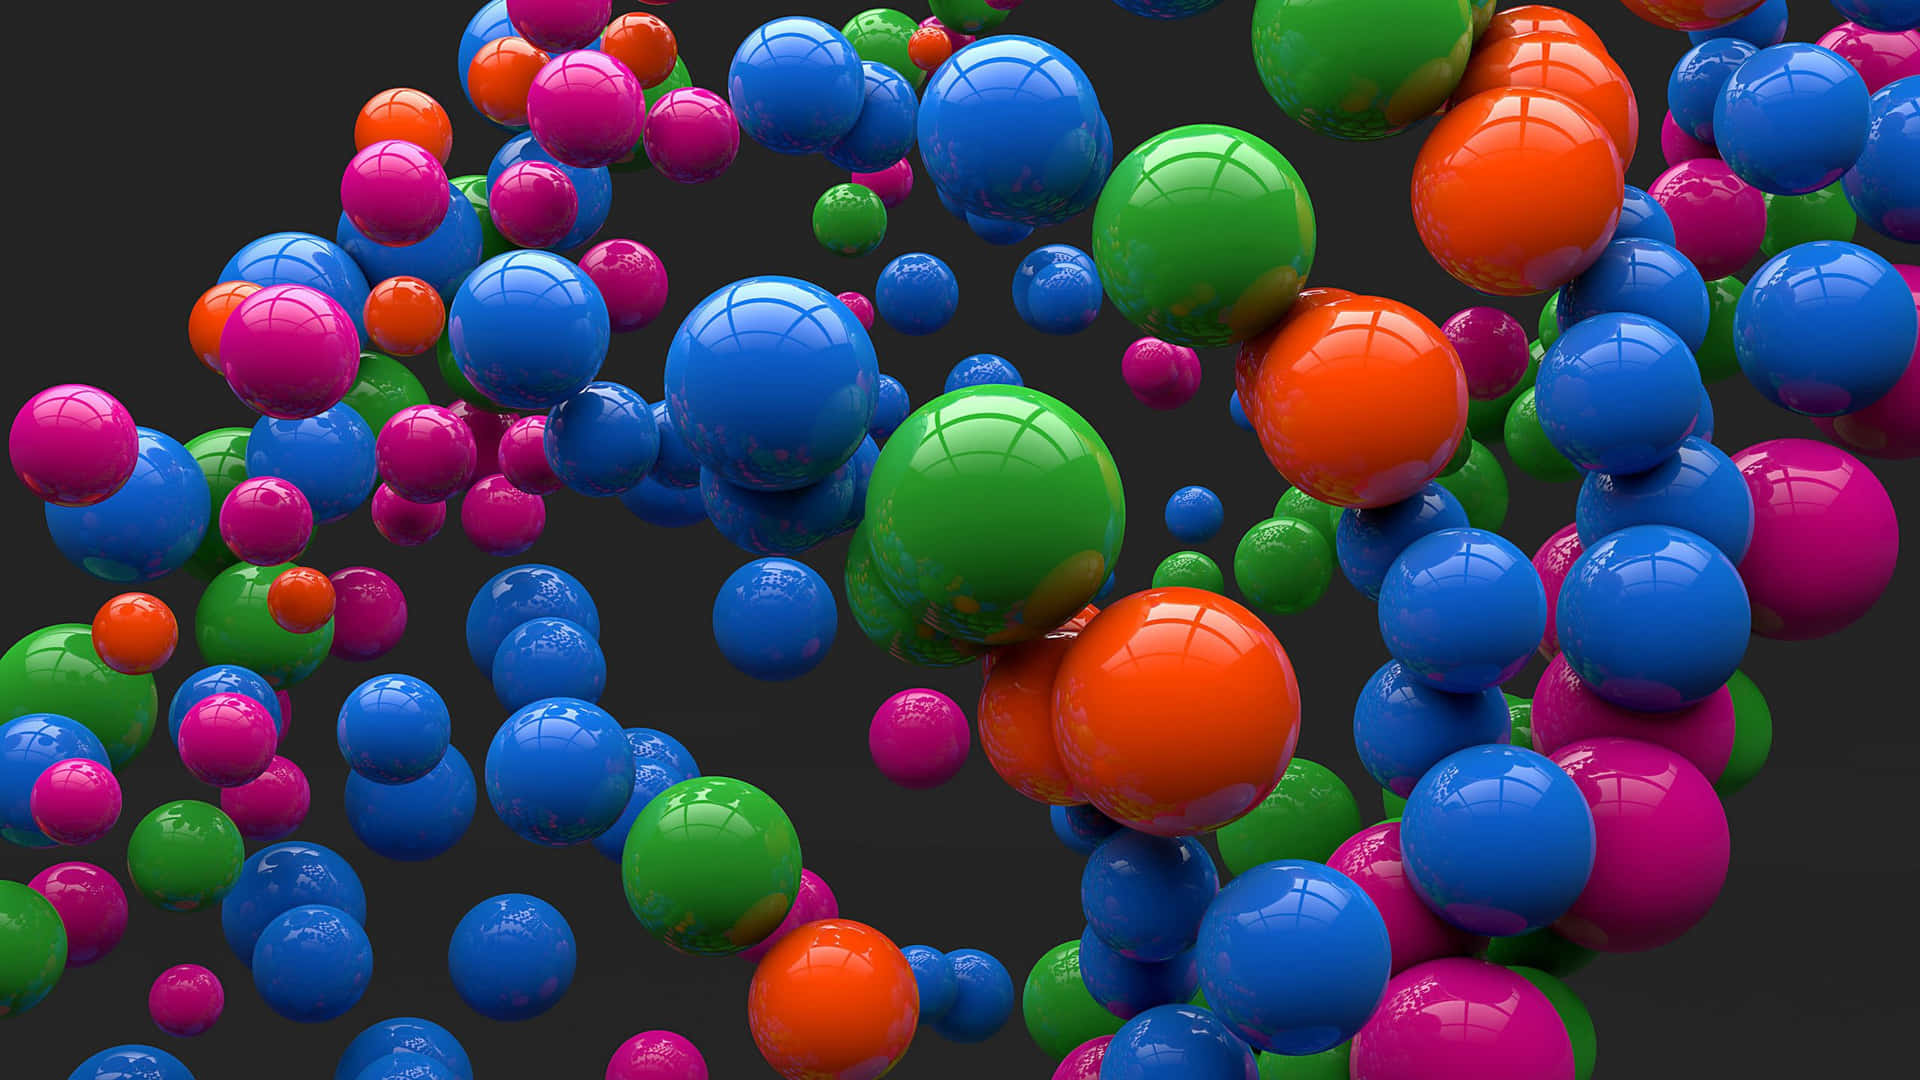 Unmontón De Bolas Coloridas Están Flotando En El Aire. Fondo de pantalla